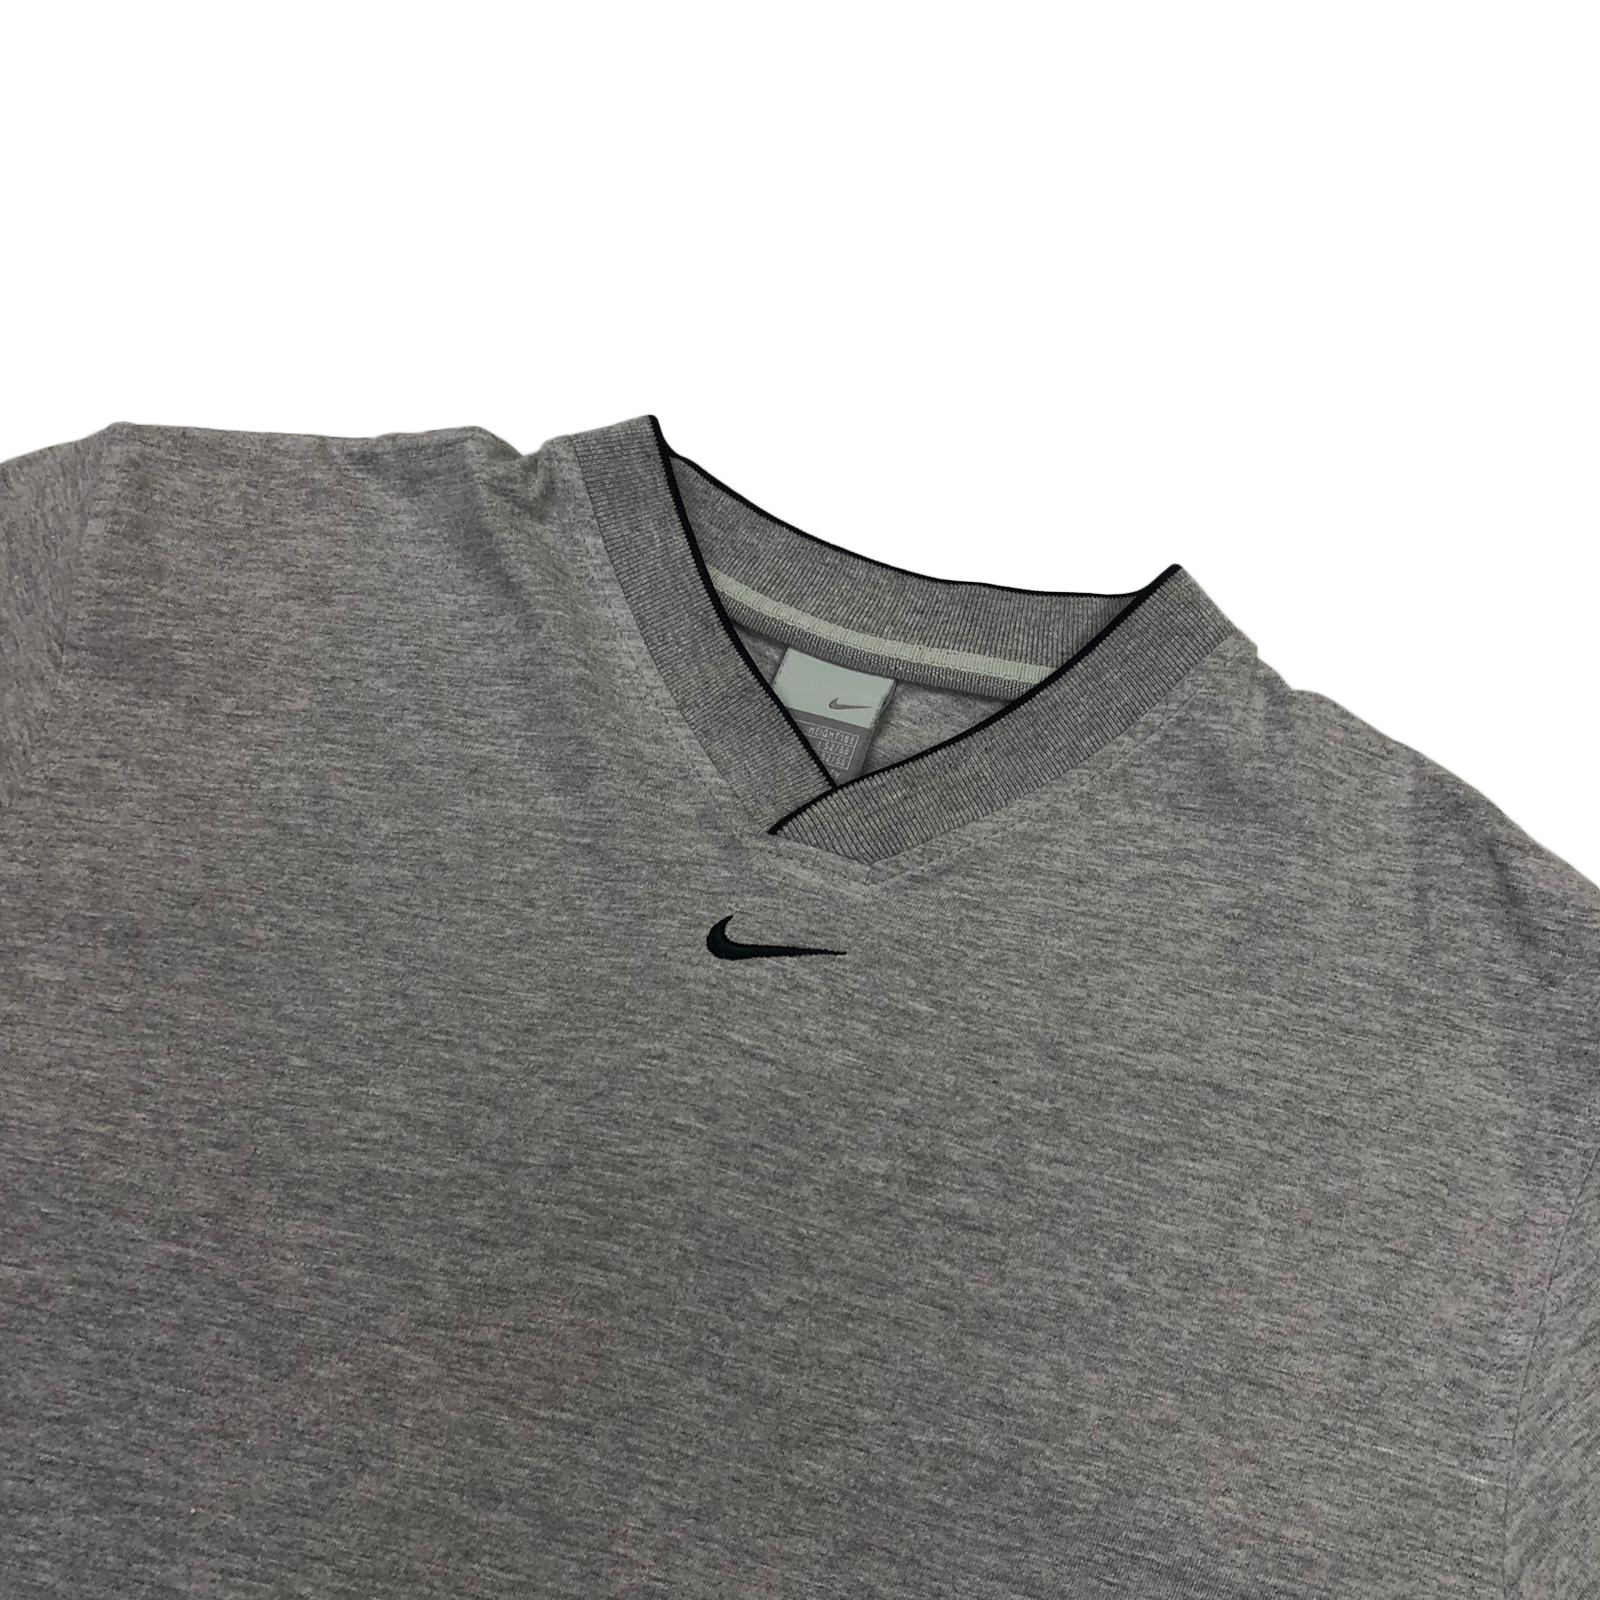 Nike centre swoosh t-shirt